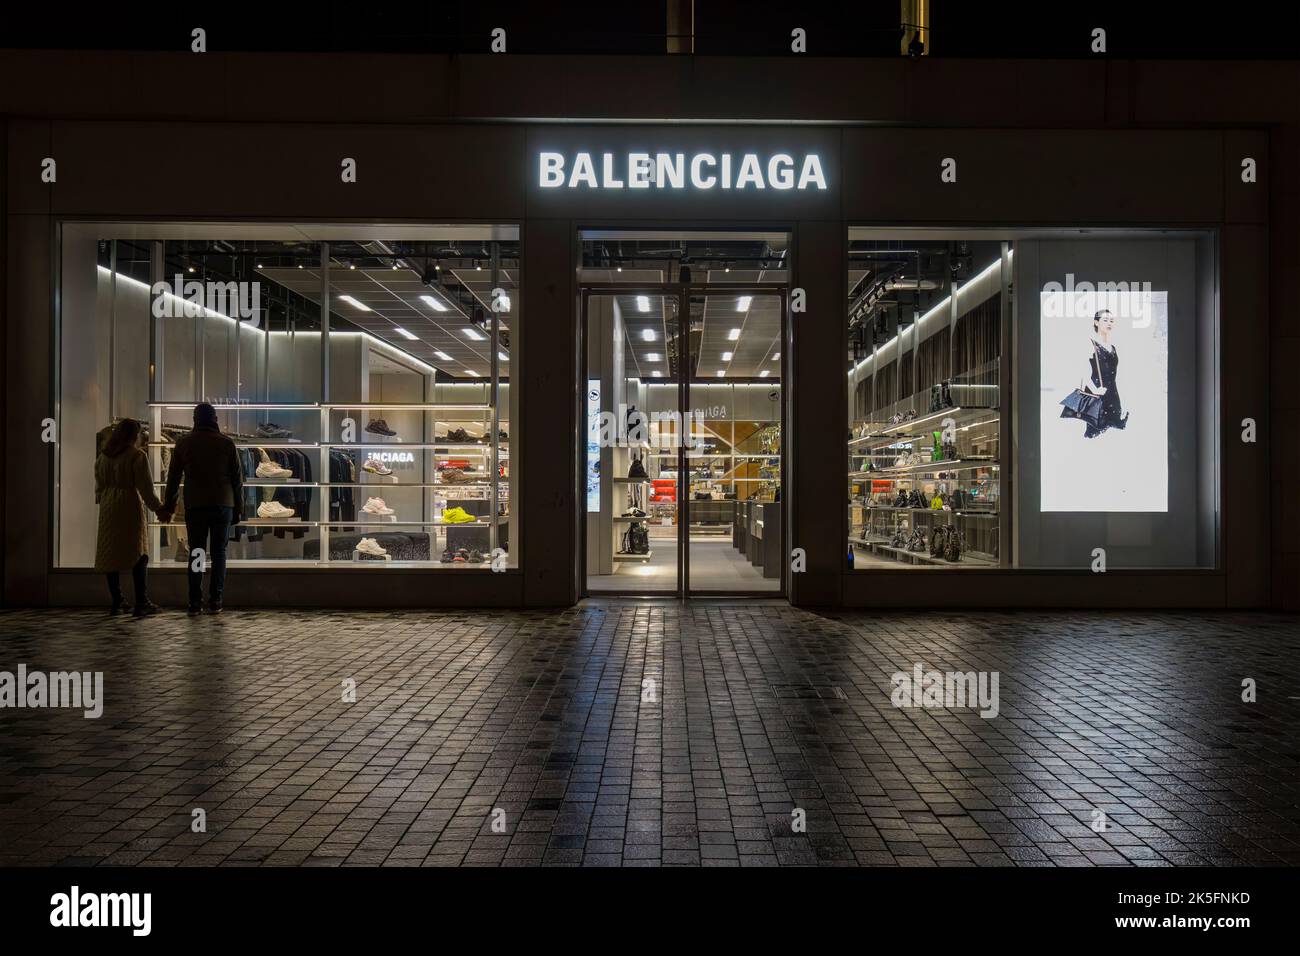 Balenciaga hi-res stock photography and images